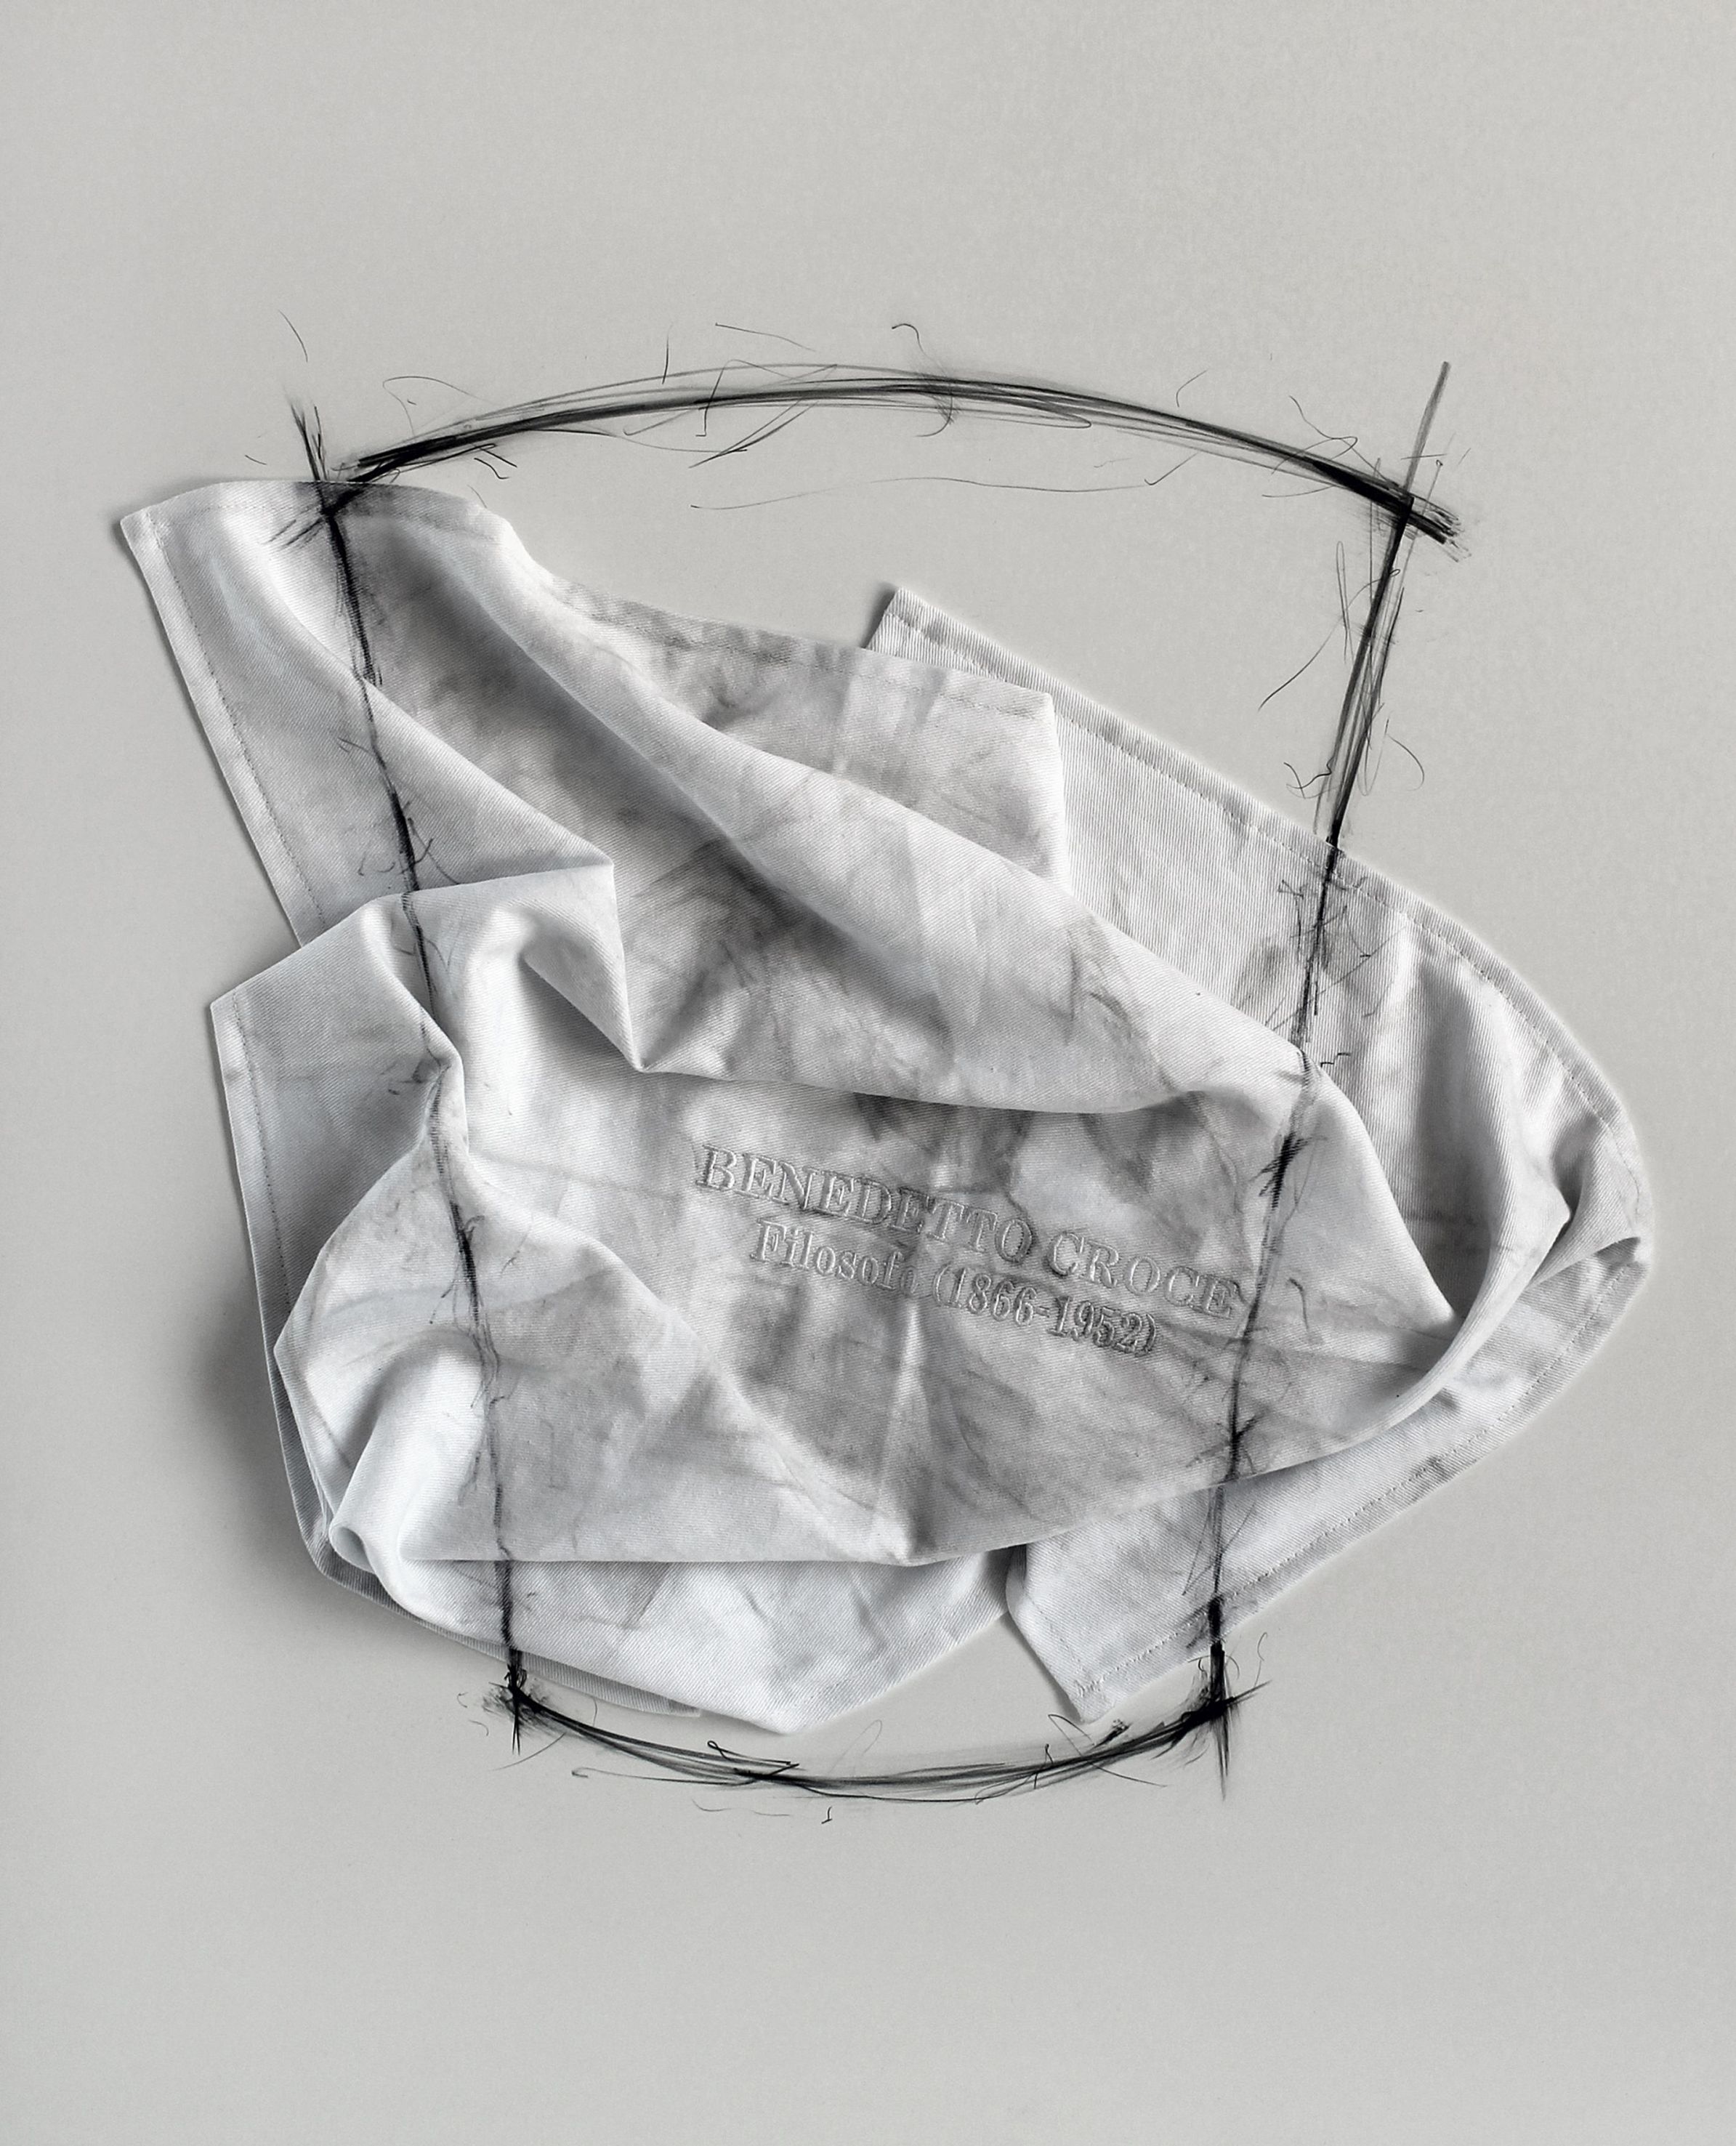 Gino Sabatini Odoardi, Senza titolo con B.C., 2015, cotone ricamato, polvere, grafite, polistirene, cm 55x68x4